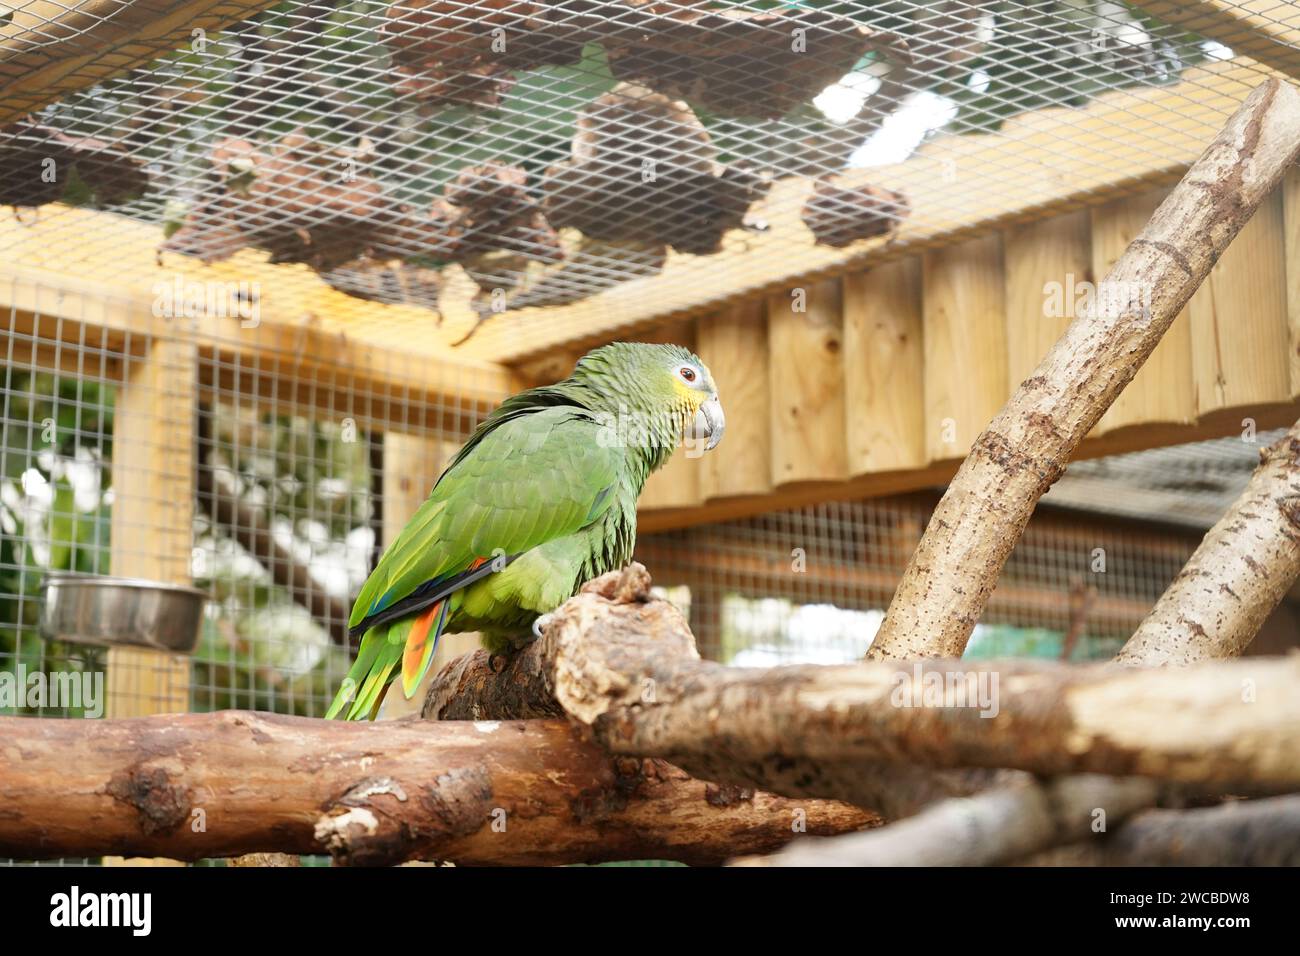 Animals at Amazonia - Ein Ort, an dem wir Tiere aus dem Amazonas Regenwald betrachten, direkt im M&D's Freizeitpark im Strathclyde Park Stockfoto